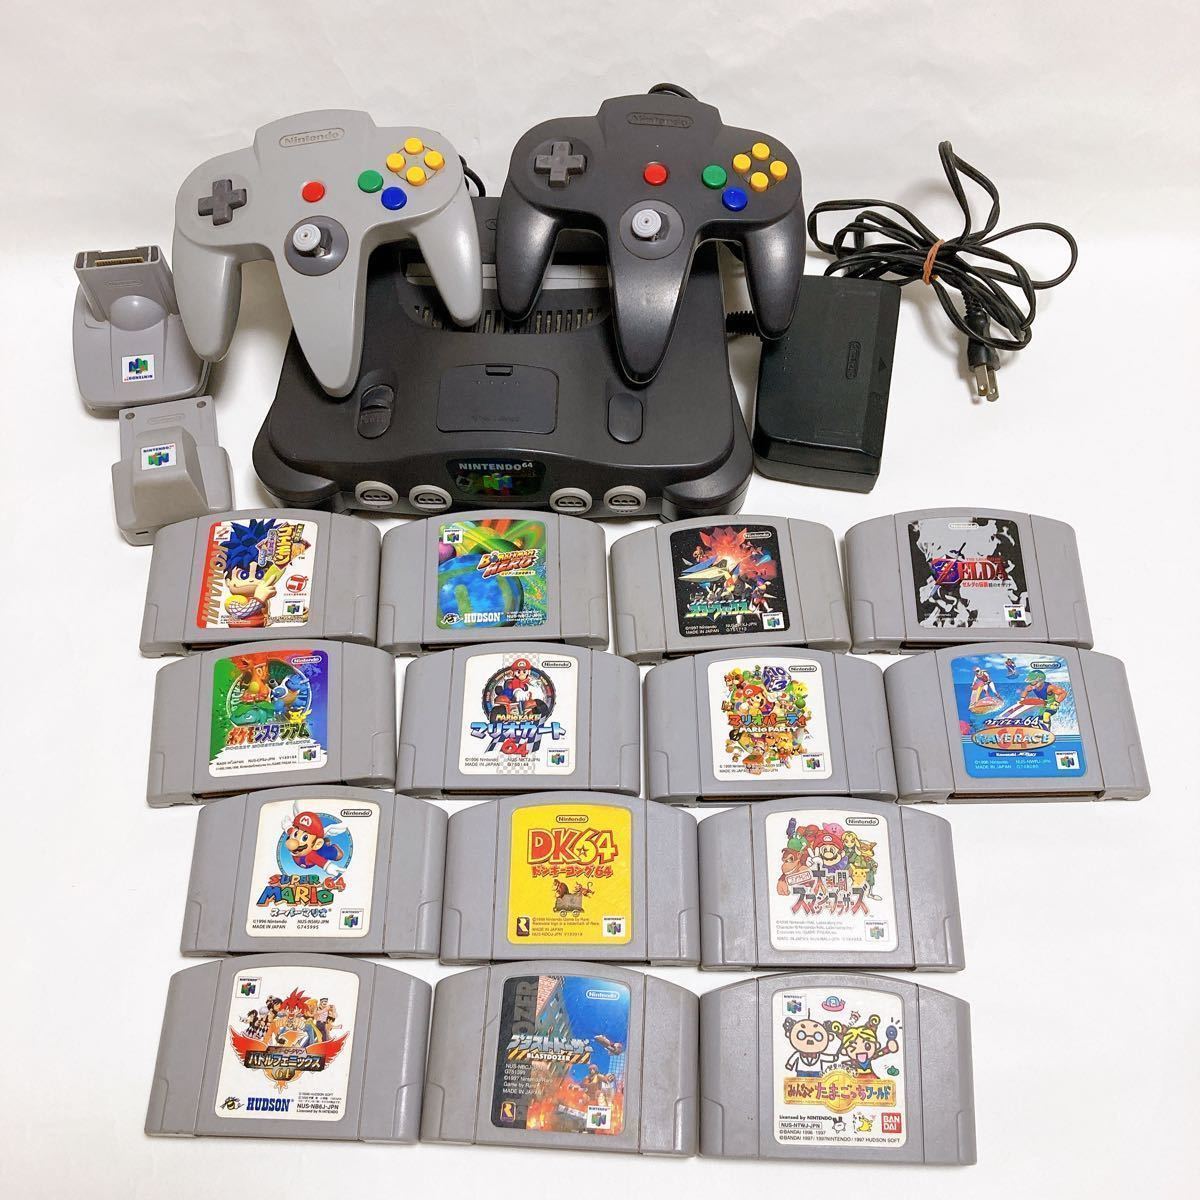 ☆ 【セット】Nintendo 64 任天堂 ニンテンドー 64 NUS-001 本体 コントローラー2個 マリオシリーズ ソフト14個 的詳細資料  | YAHOO!拍賣代標 | FROM JAPAN